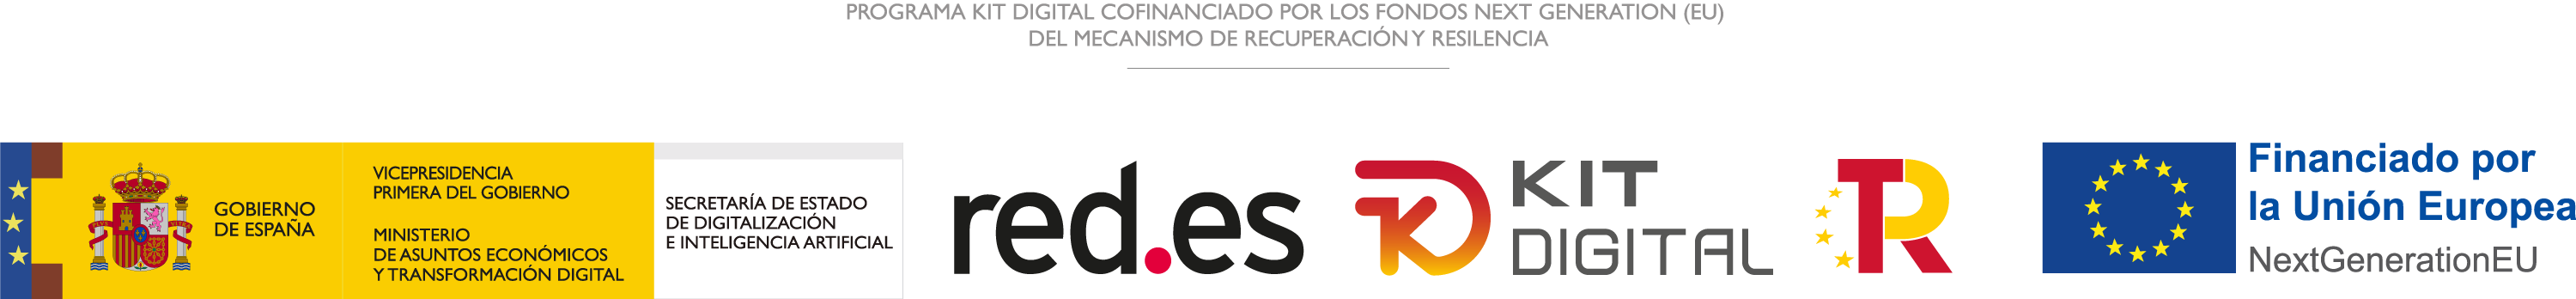 Programa KIT DIGITAL cofinanciado por los fondos NEXT GENERATION (EU) del mecanismo de recuperación y resilencia